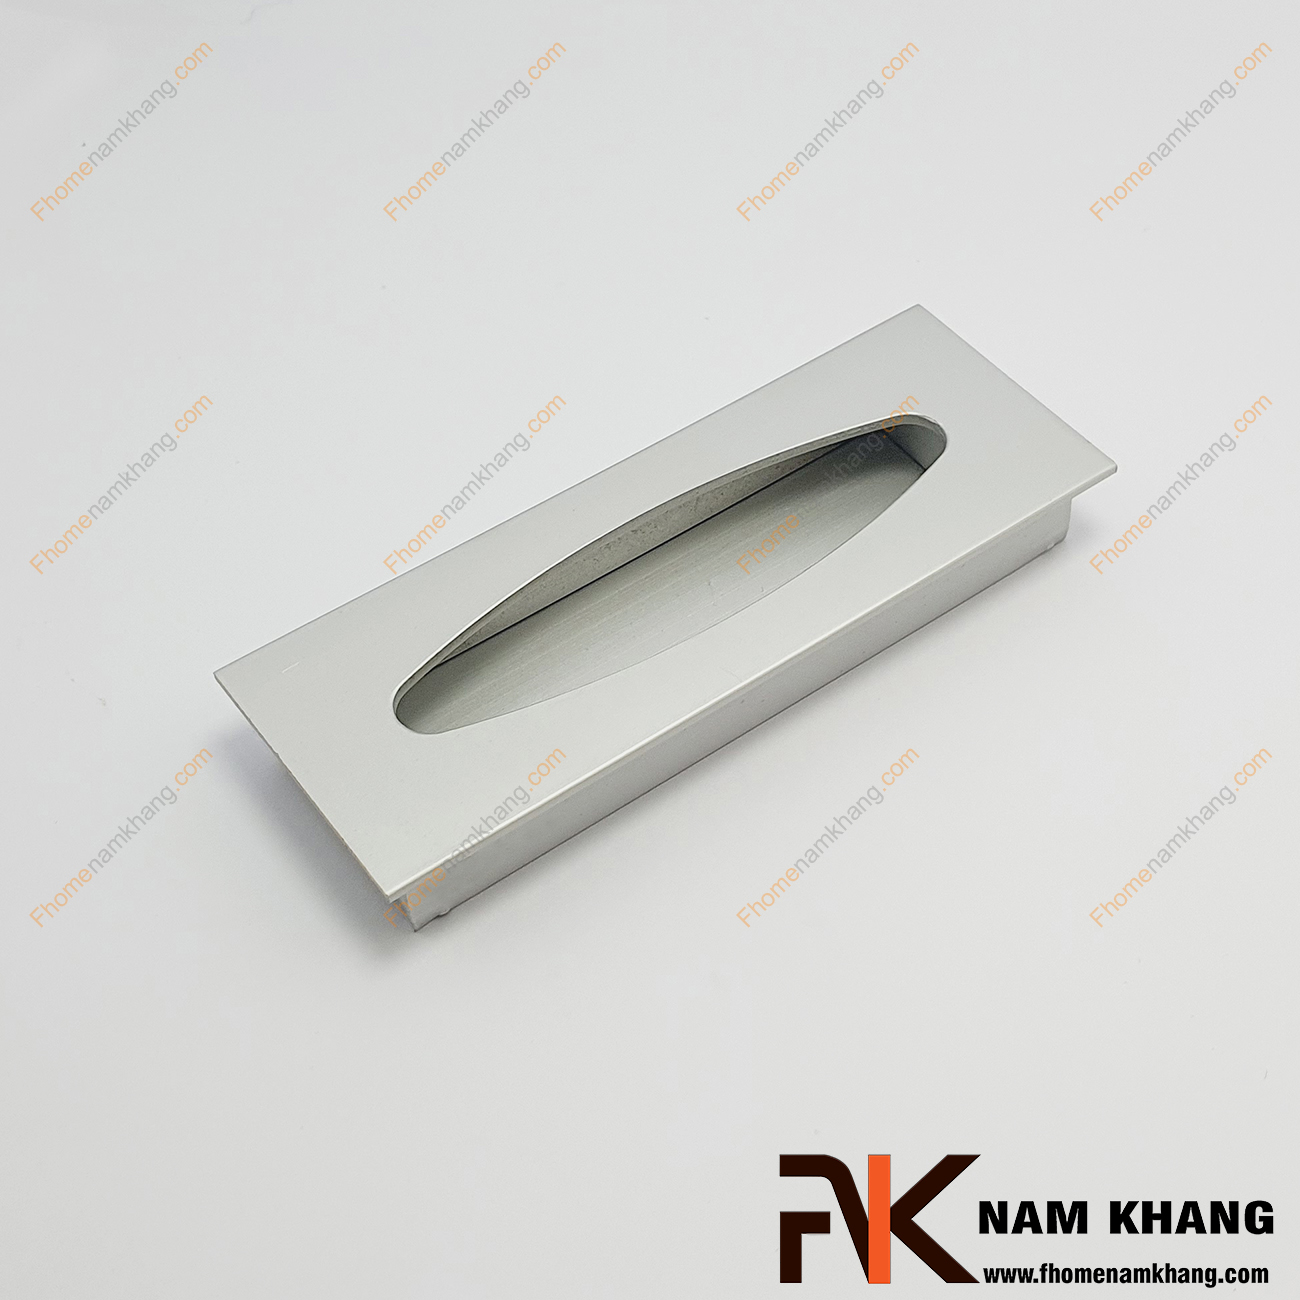 Tay nắm âm tủ màu nhôm NK012-NE là loại tay nắm chuyên dùng cho các loại tủ đặt ở những nơi có không gian hạn chế hoặc dùng để nâng cao tính thẫm mỹ của sản phẩm.